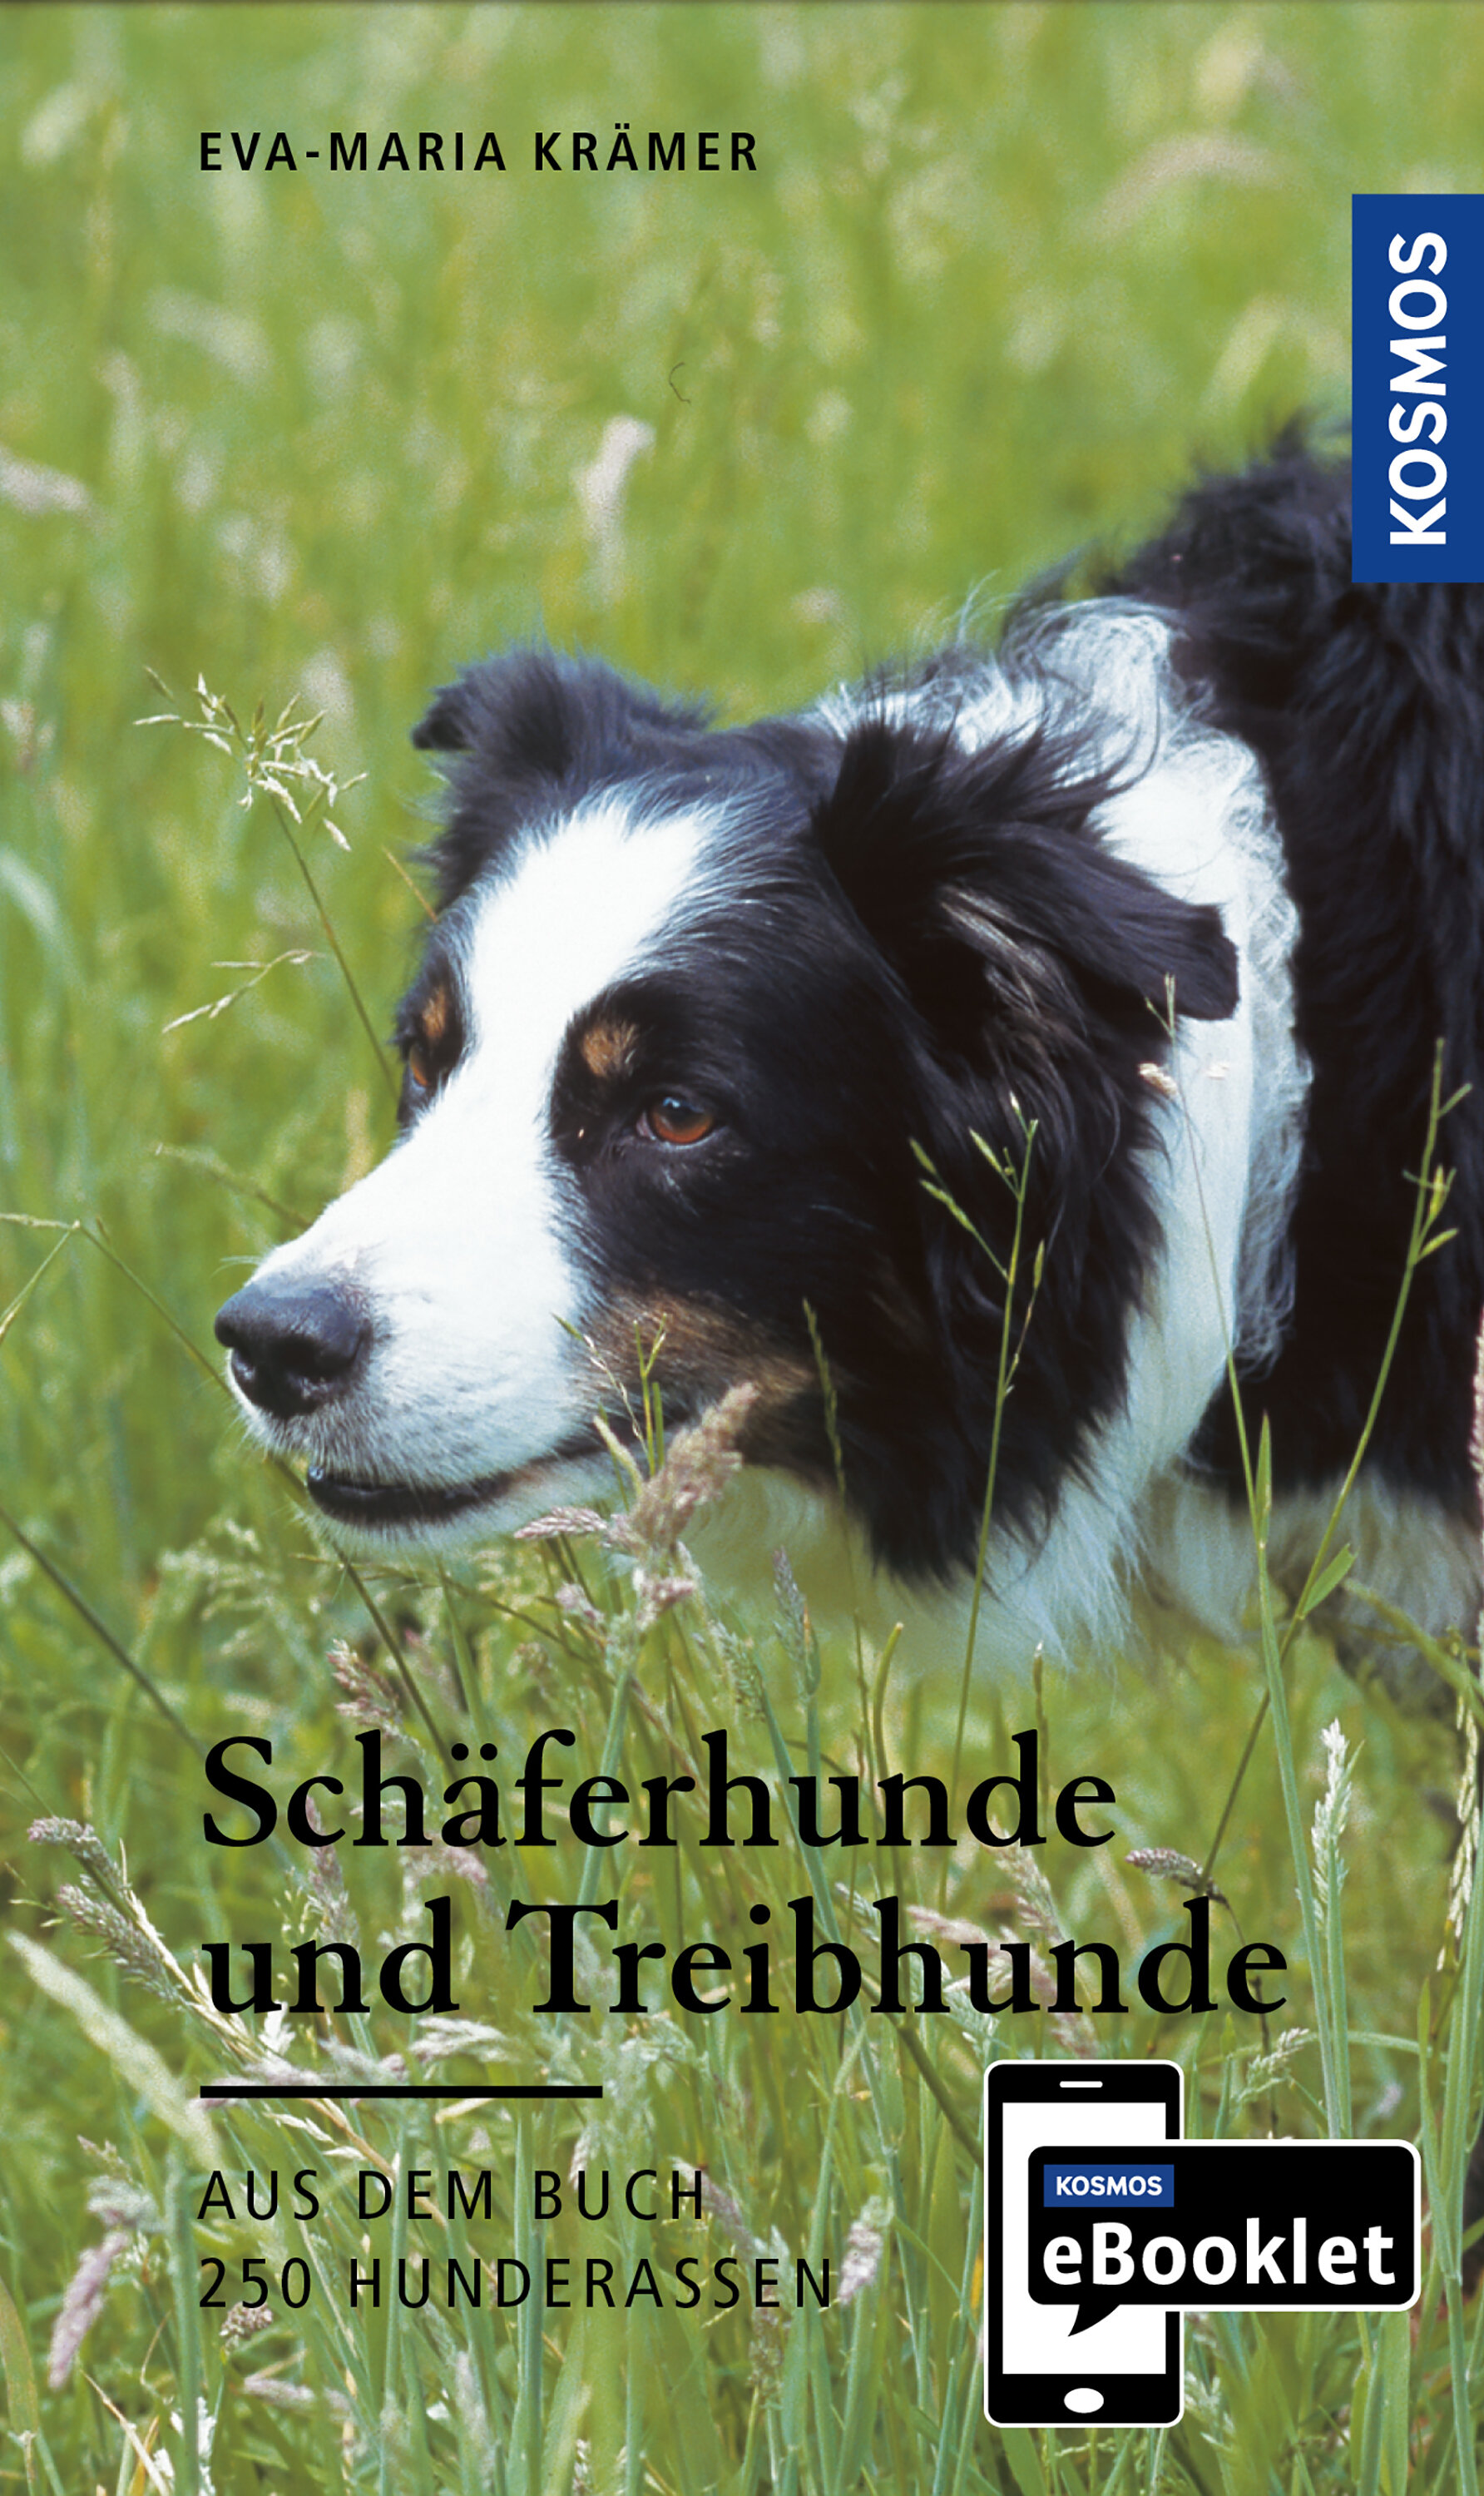 KOSMOS eBooklet: Schäferhunde und Treibhunde - Ursprung  Wesen  Haltung